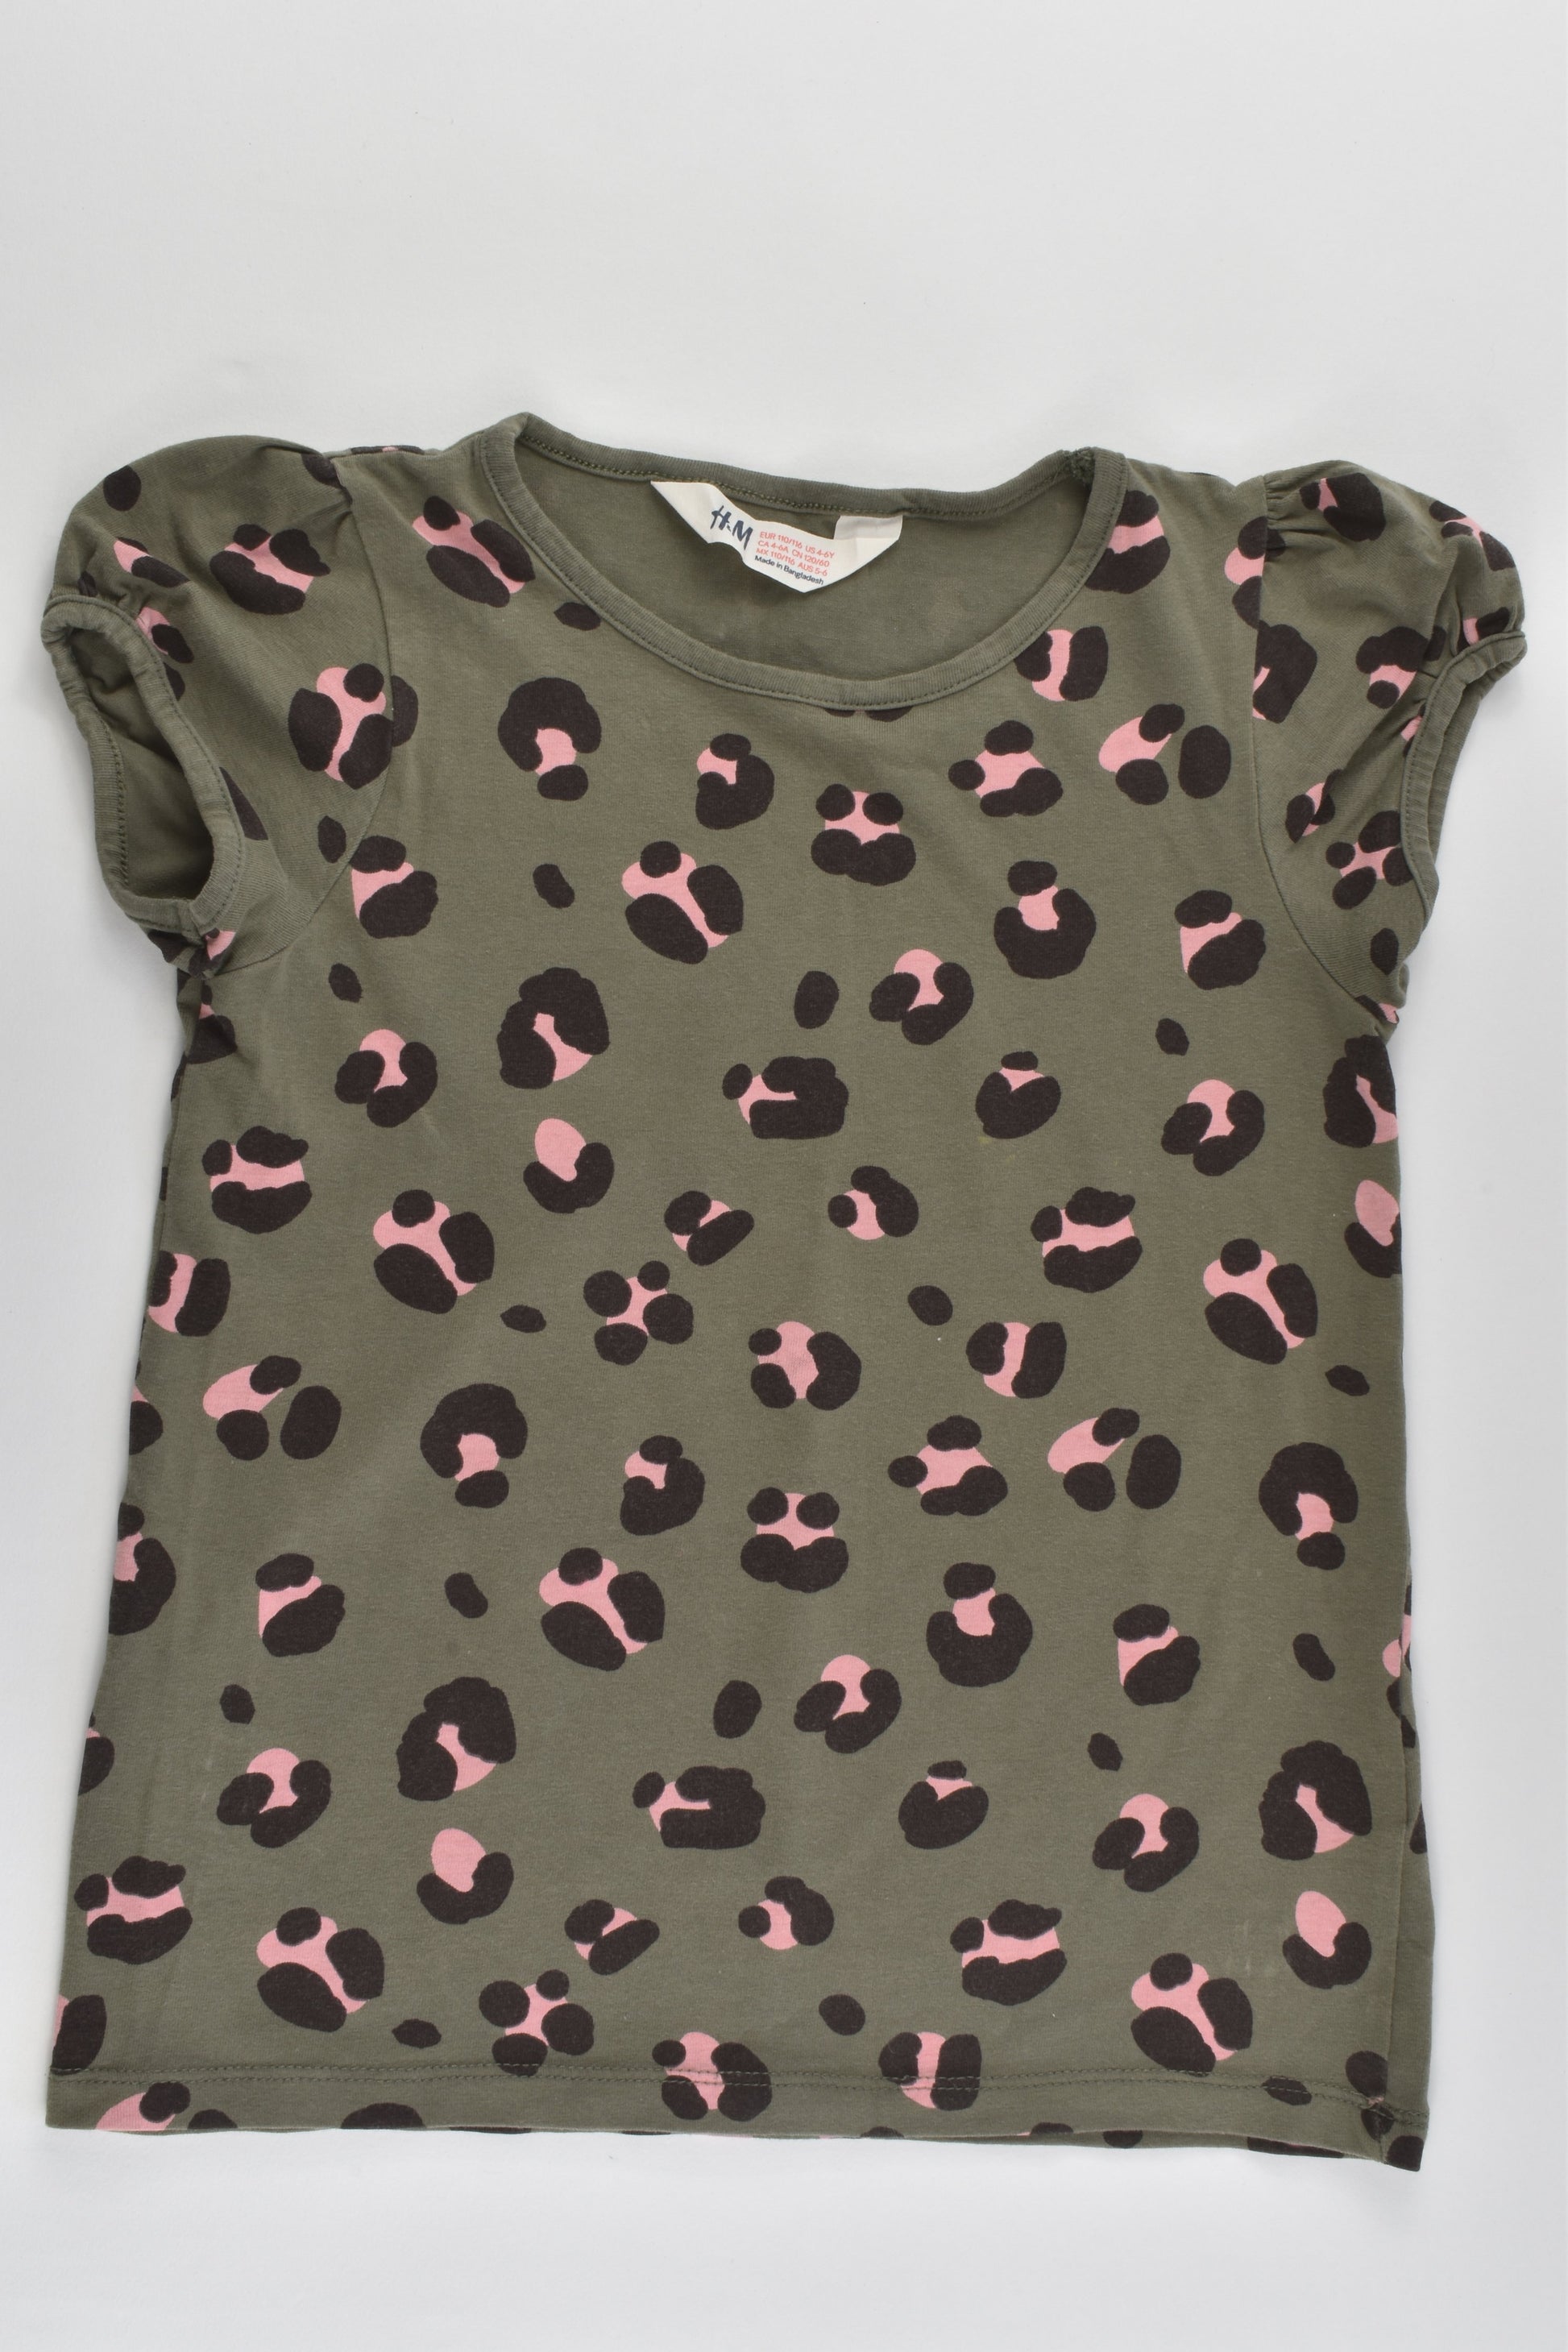 H&M Size 5-6 (110/116 cm) Leopard Print T-shirt